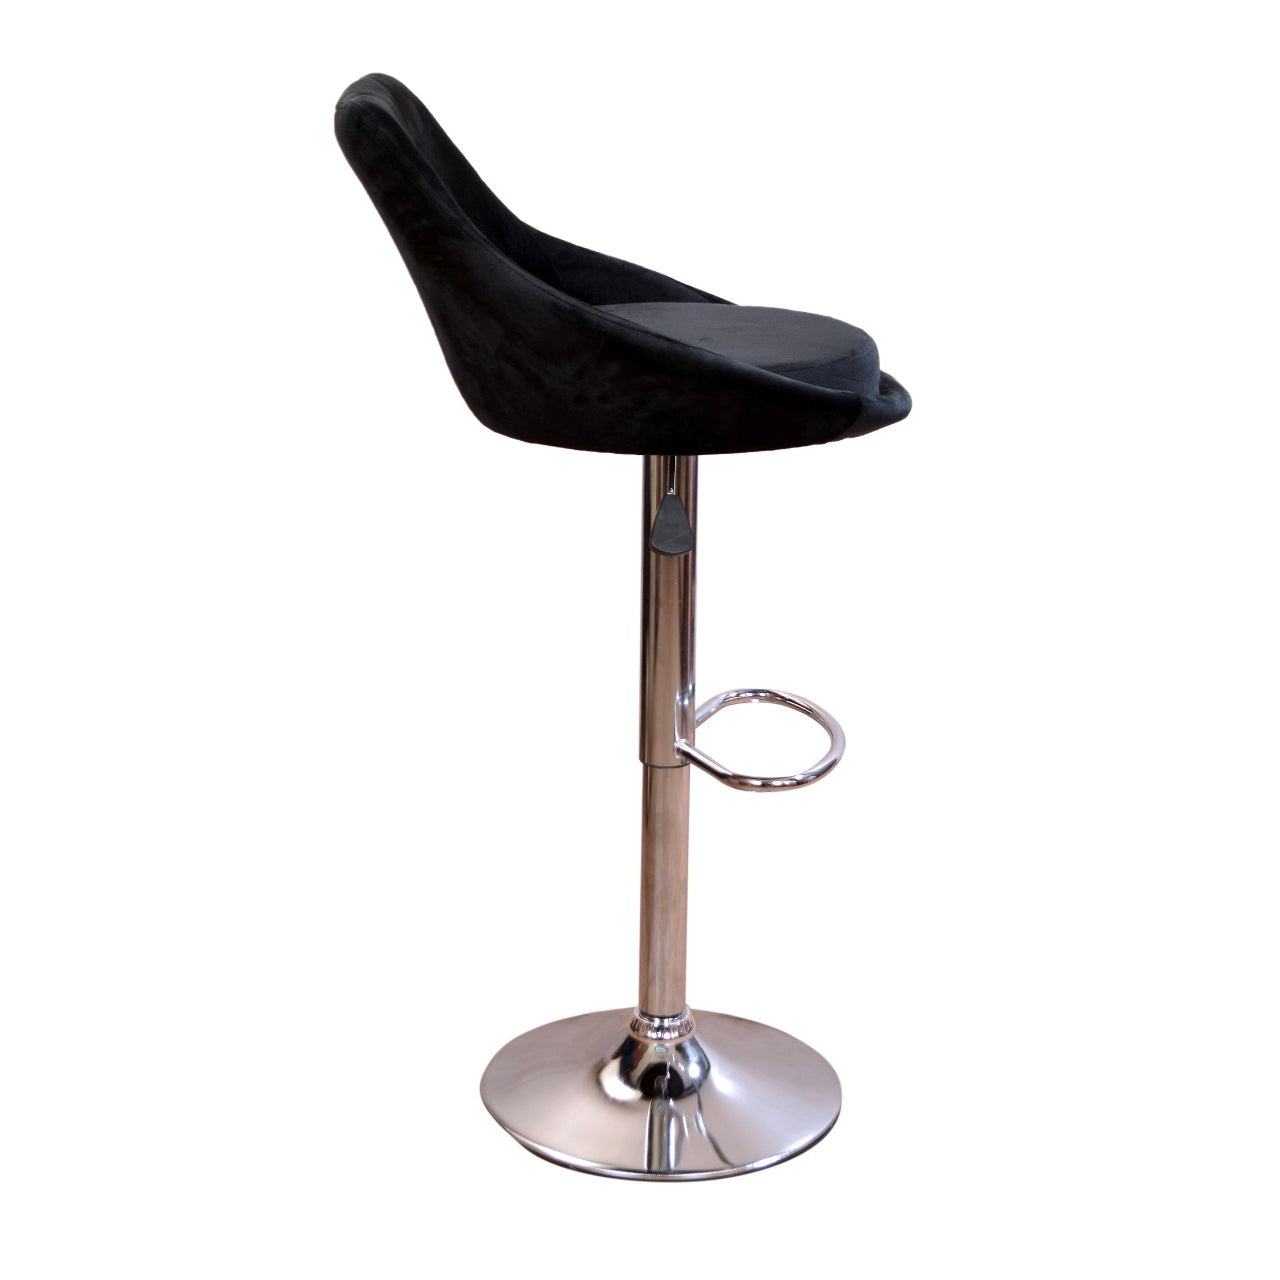 Hydraulic Bar stool -AC63 - black